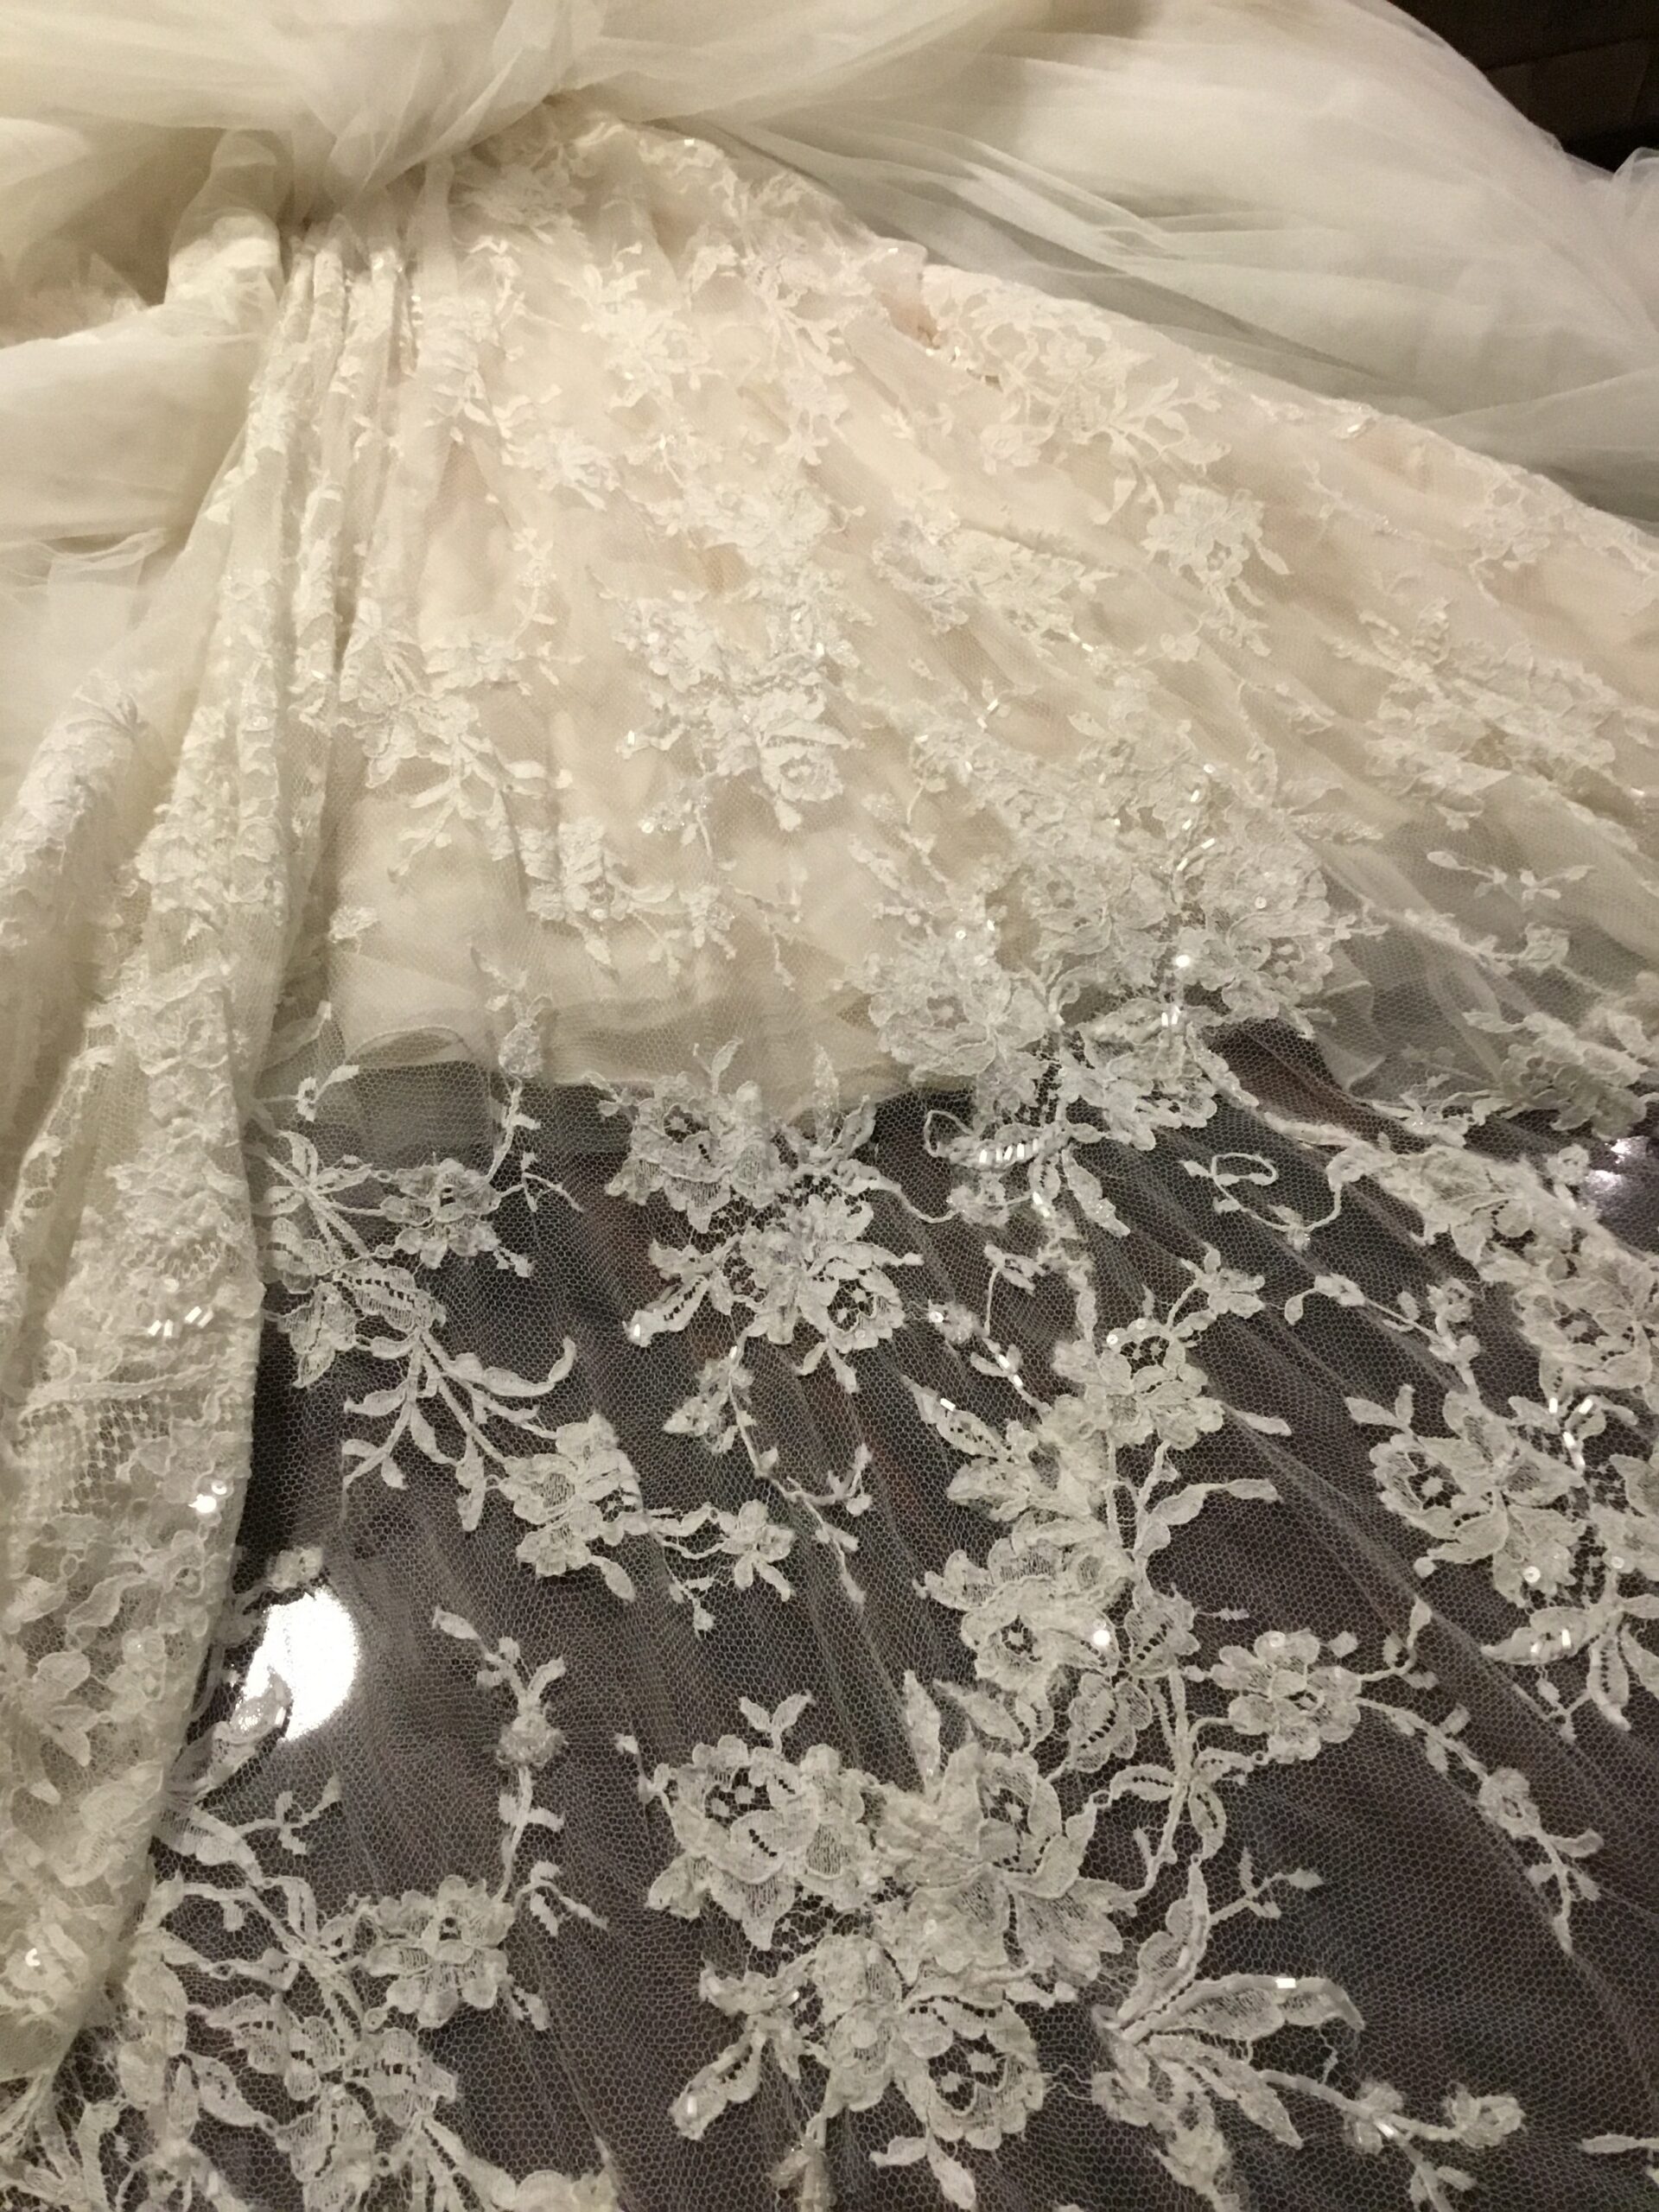 Vestido de noiva Elie Saab Aglaya Wedding Dress. Vestido de Noiva coleção Pronovias- modelo Aglaya Elie Saab 2011 6